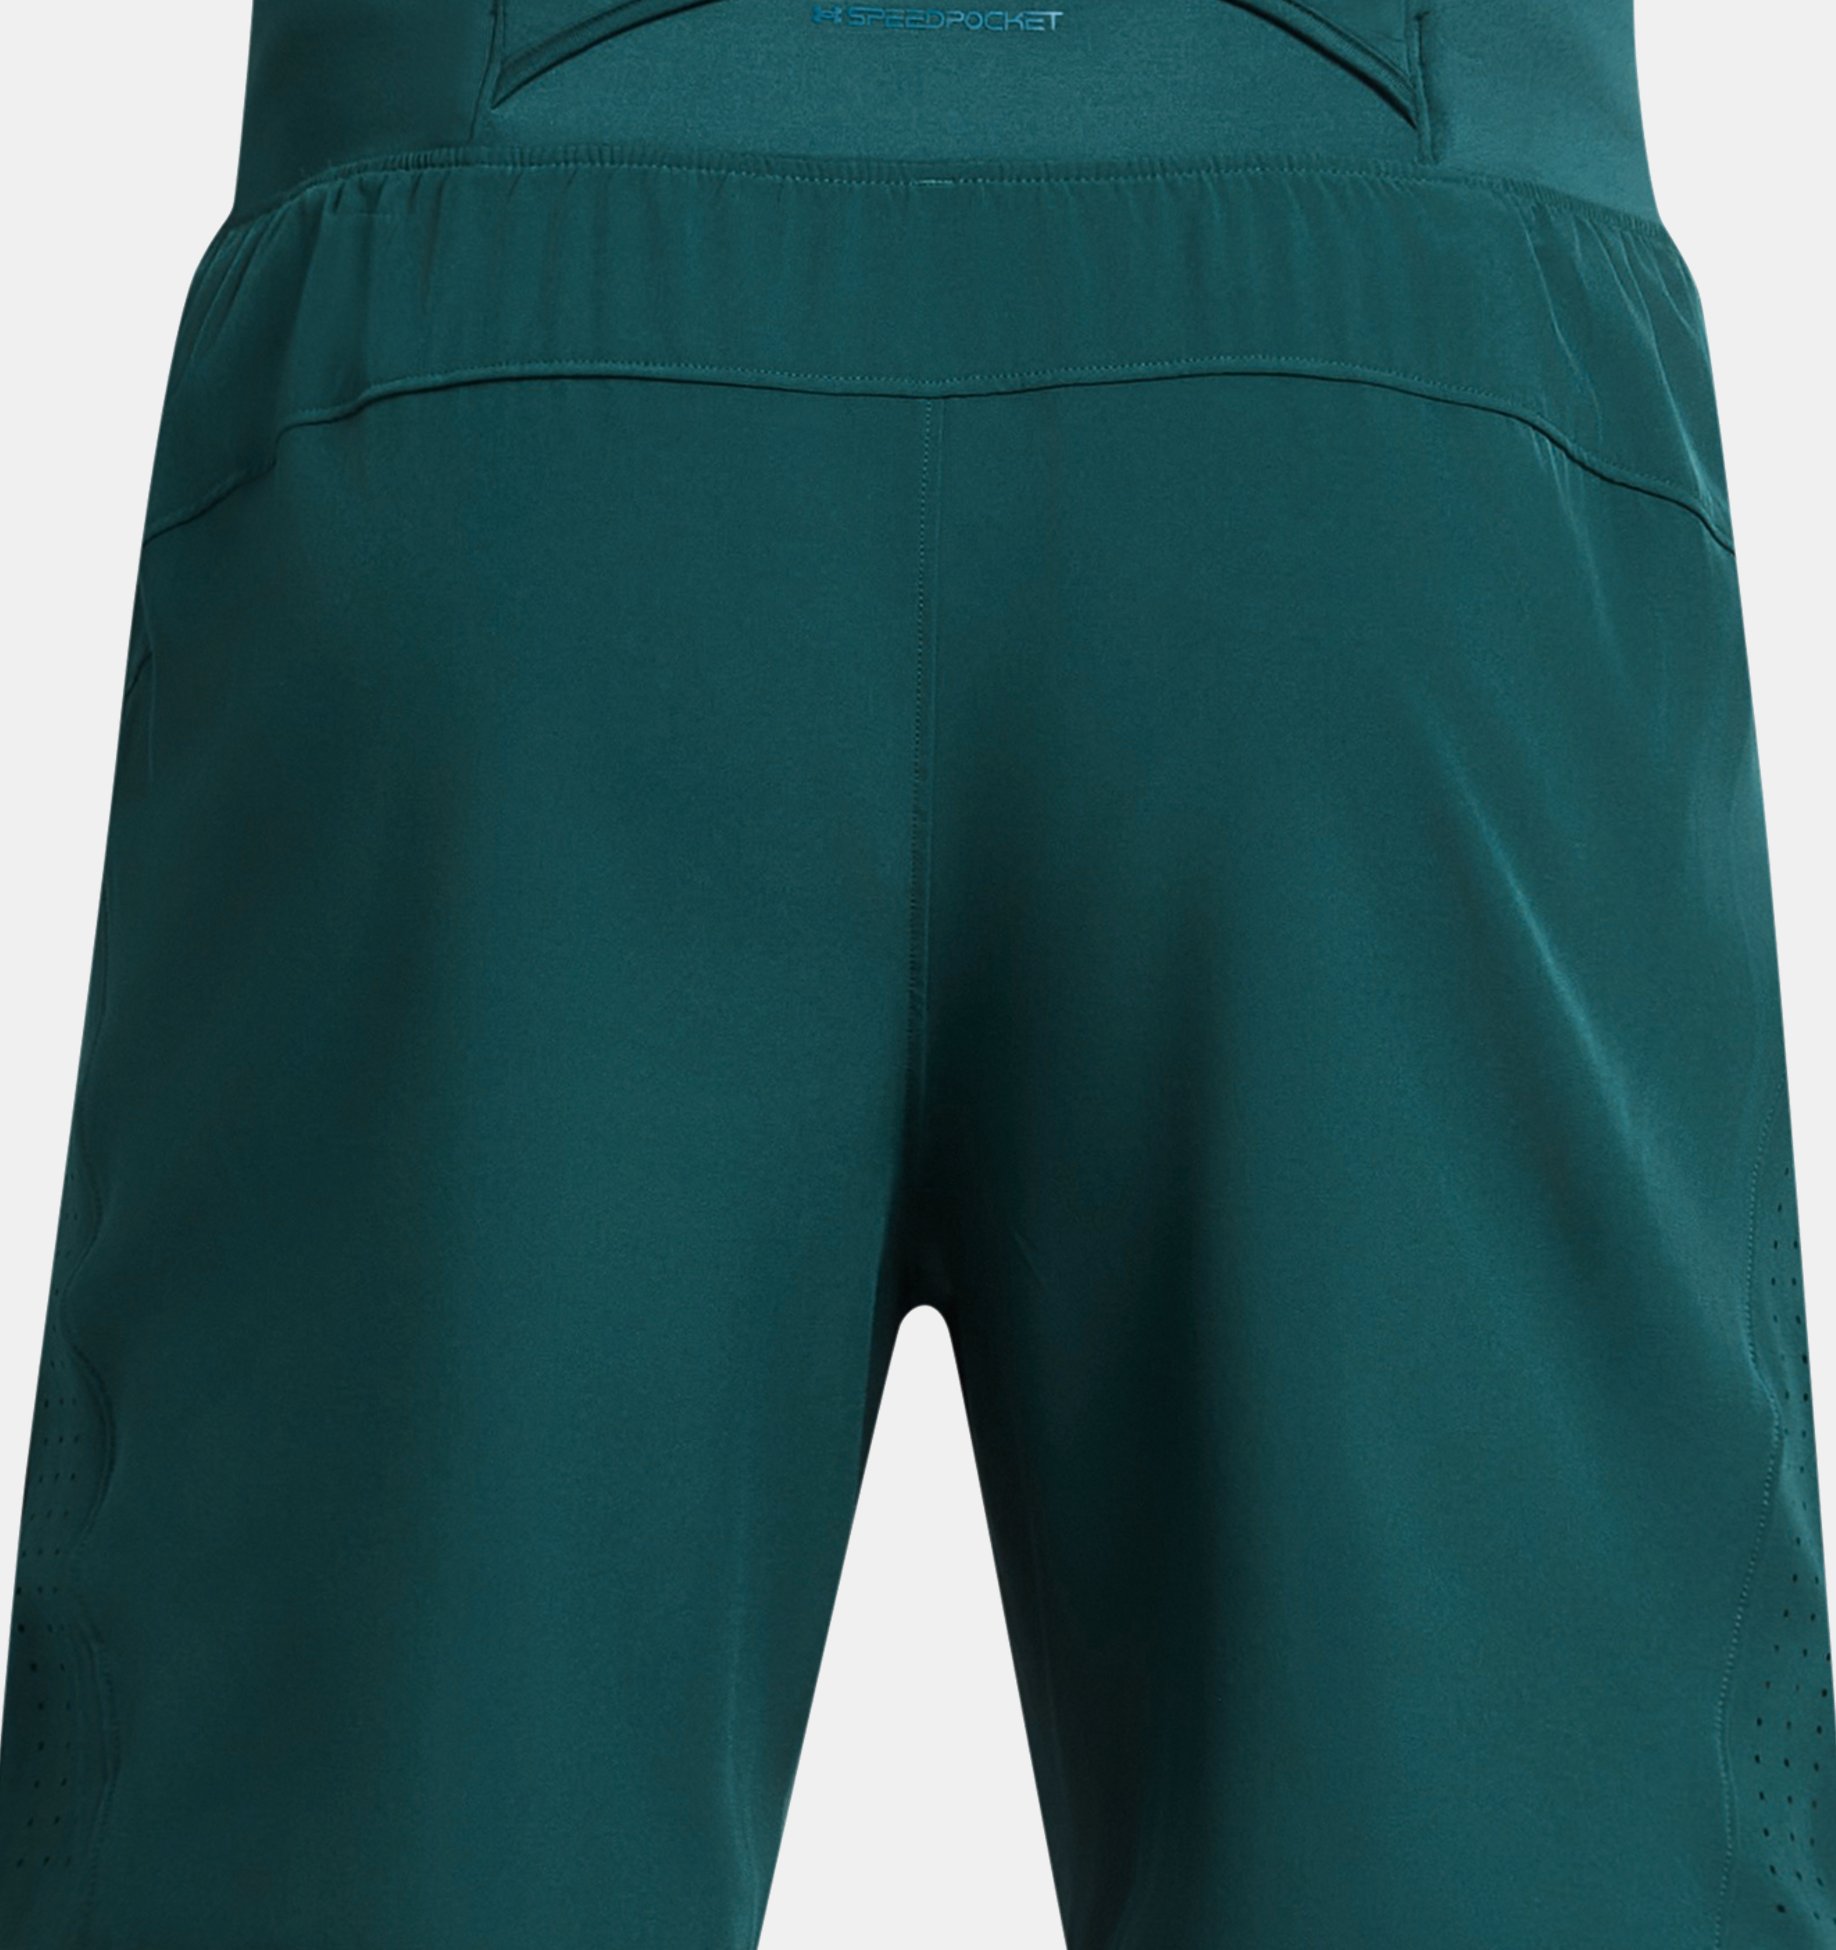 Under Armour UA Launch Elite Shorts (18 cm) Herren - Static Blue/Lime  Surge/Reflective